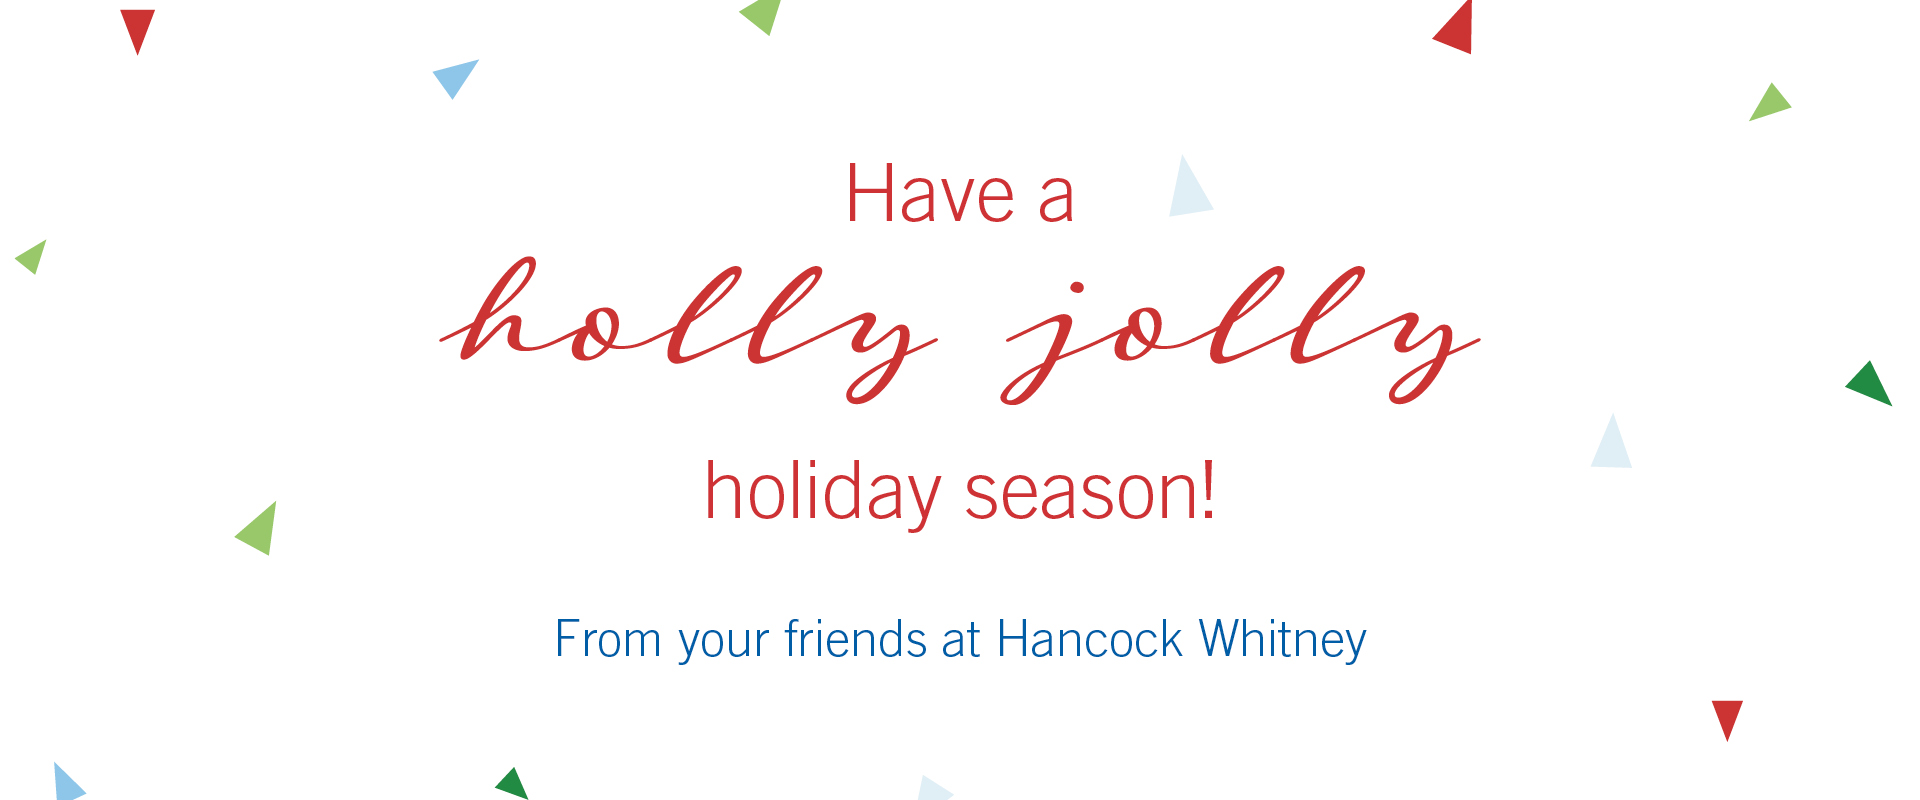 Happy Holidays from Hancock Whitney!